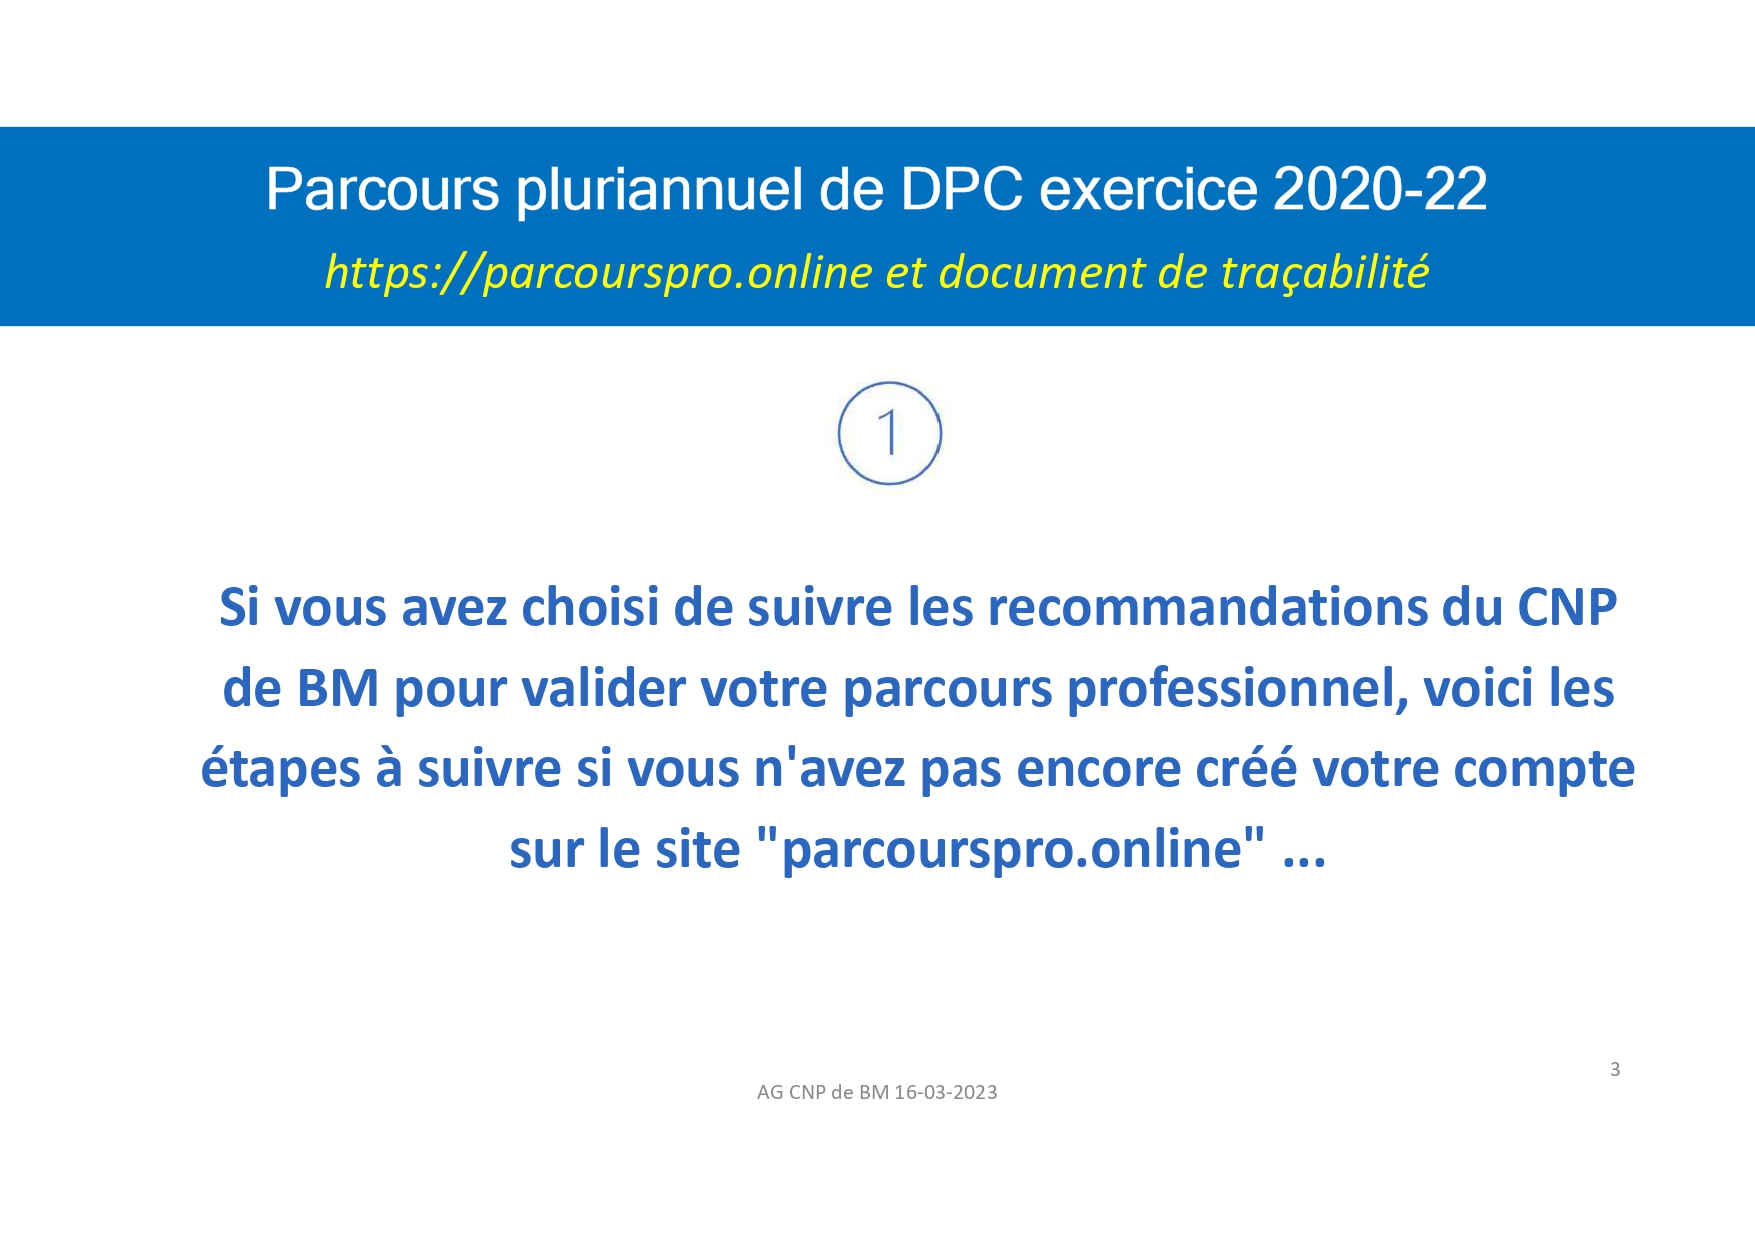 MO_Parcours_professionnel_DPC_des_biologistes_médicaux_compressed_page-0003.jpg